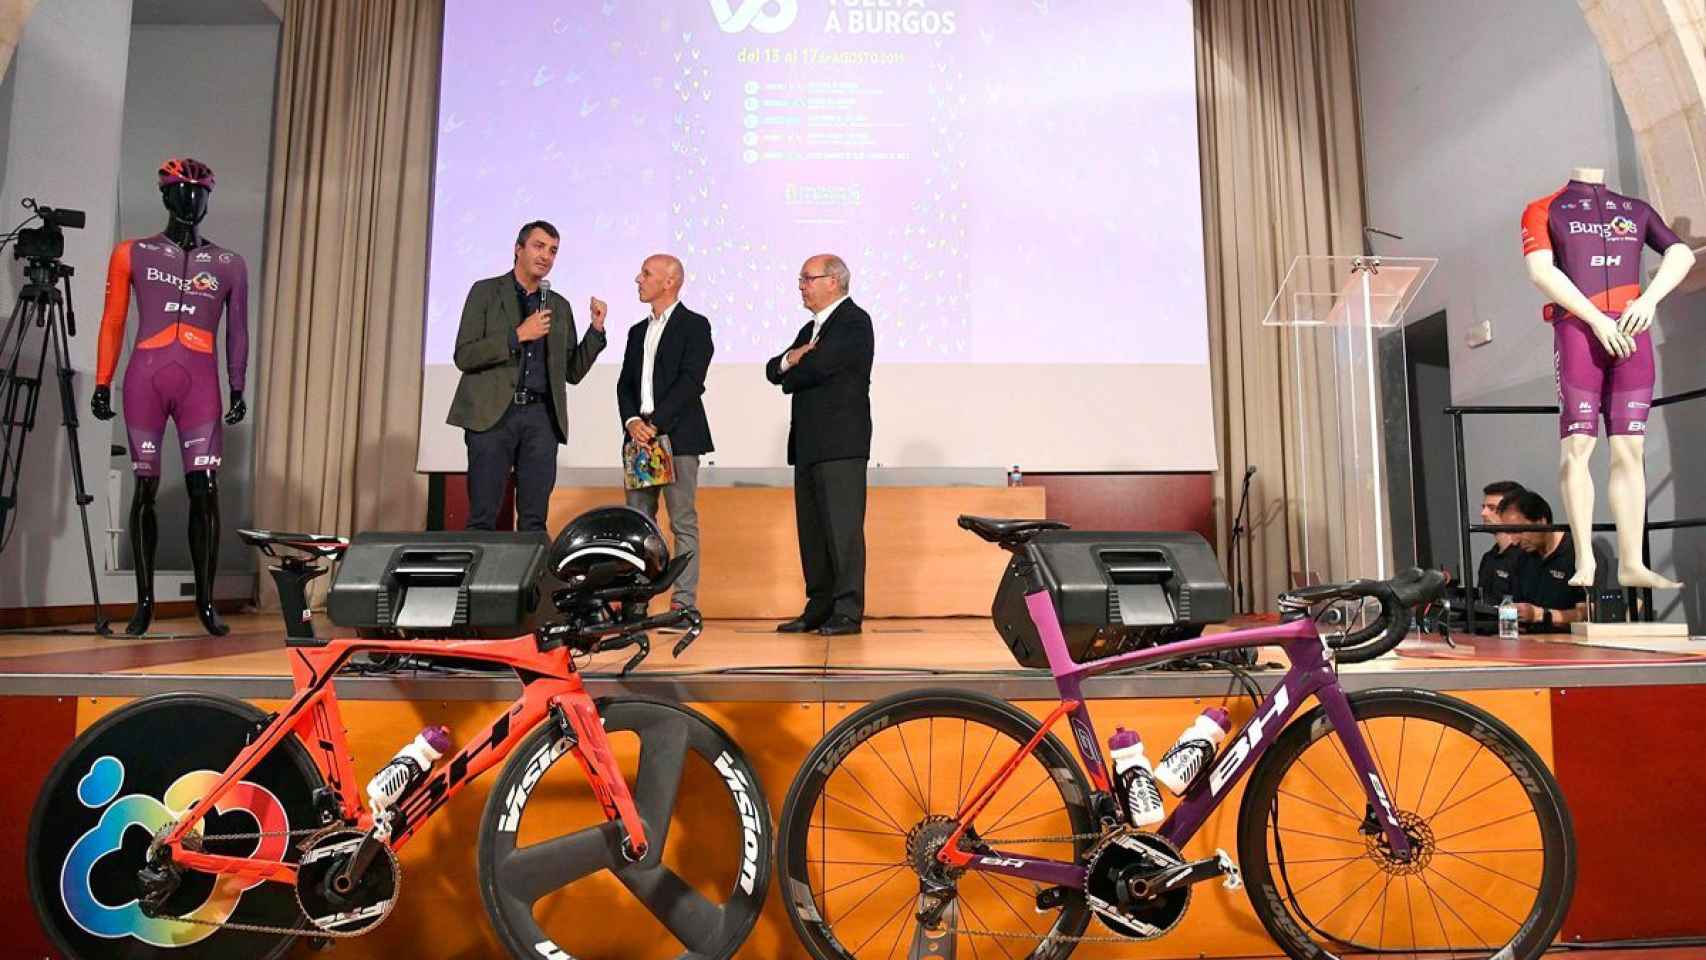 Javier Guillén, director de La Vuelta a España, Juan Mari Guajardo, speaker, y Marcos Moral, director de la Vuelta a Burgos, durante la presentación de la edición de 2019